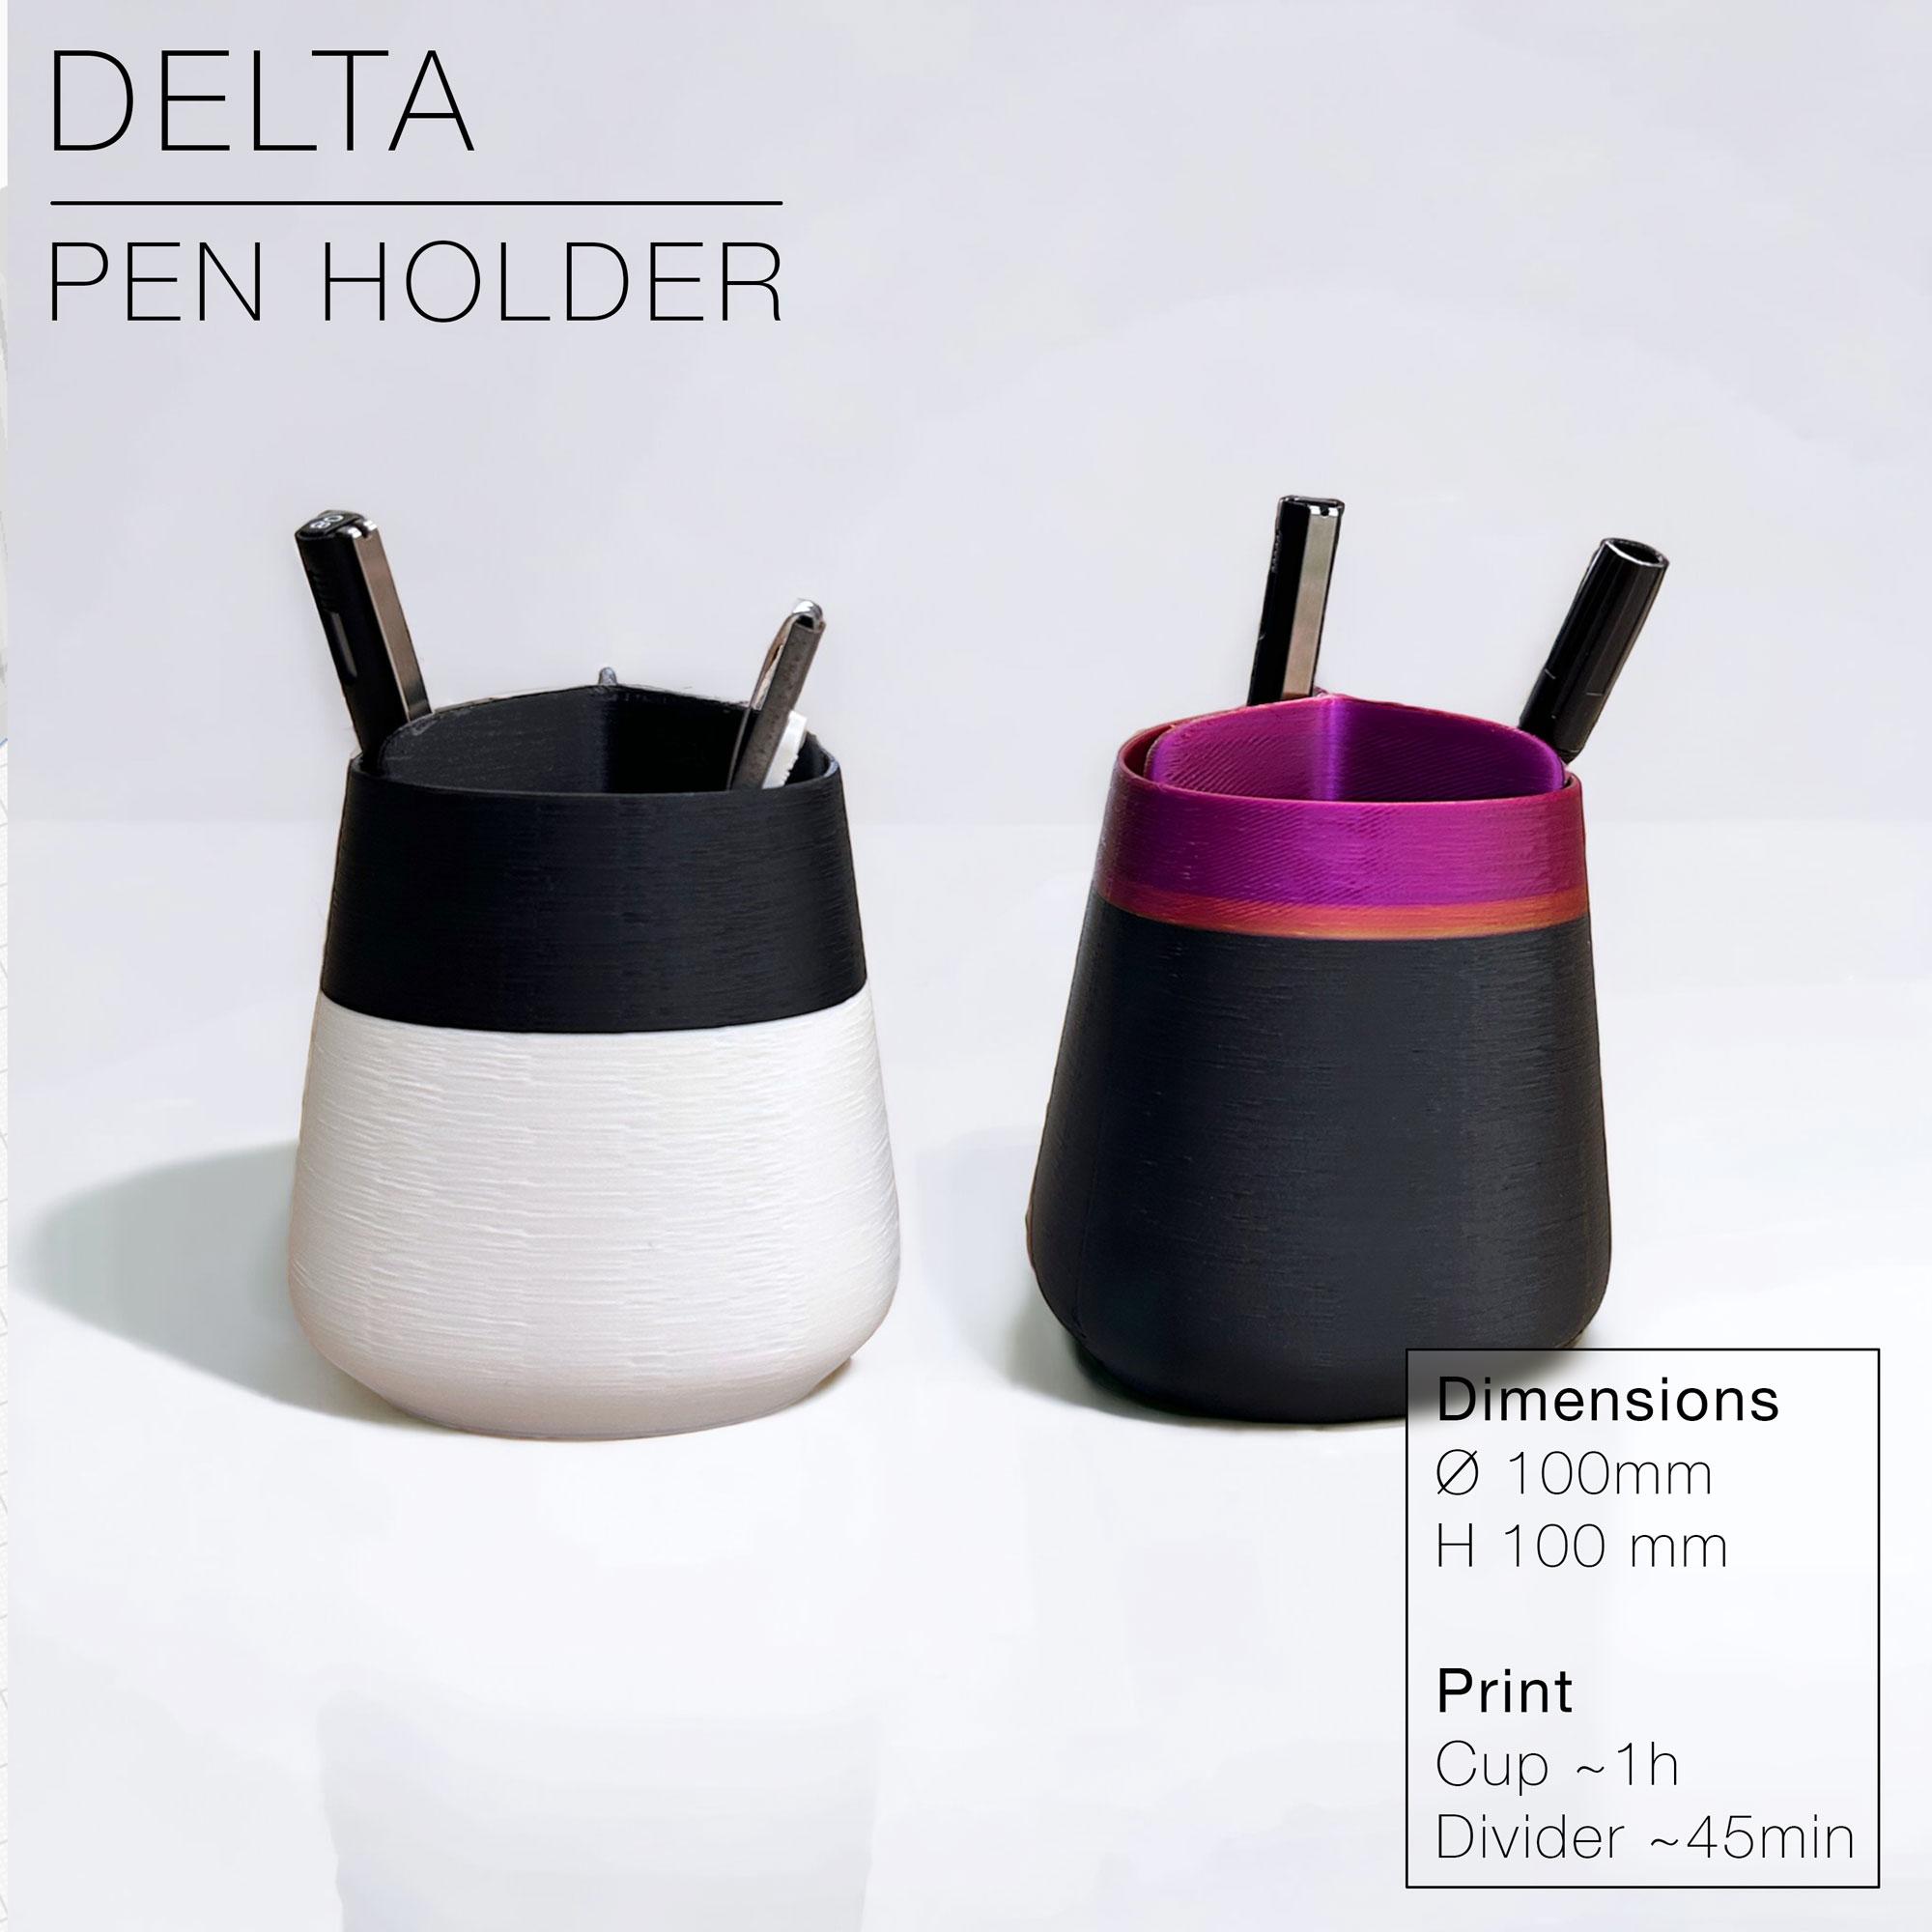 DELTA | Pen Holder with divider 3d model